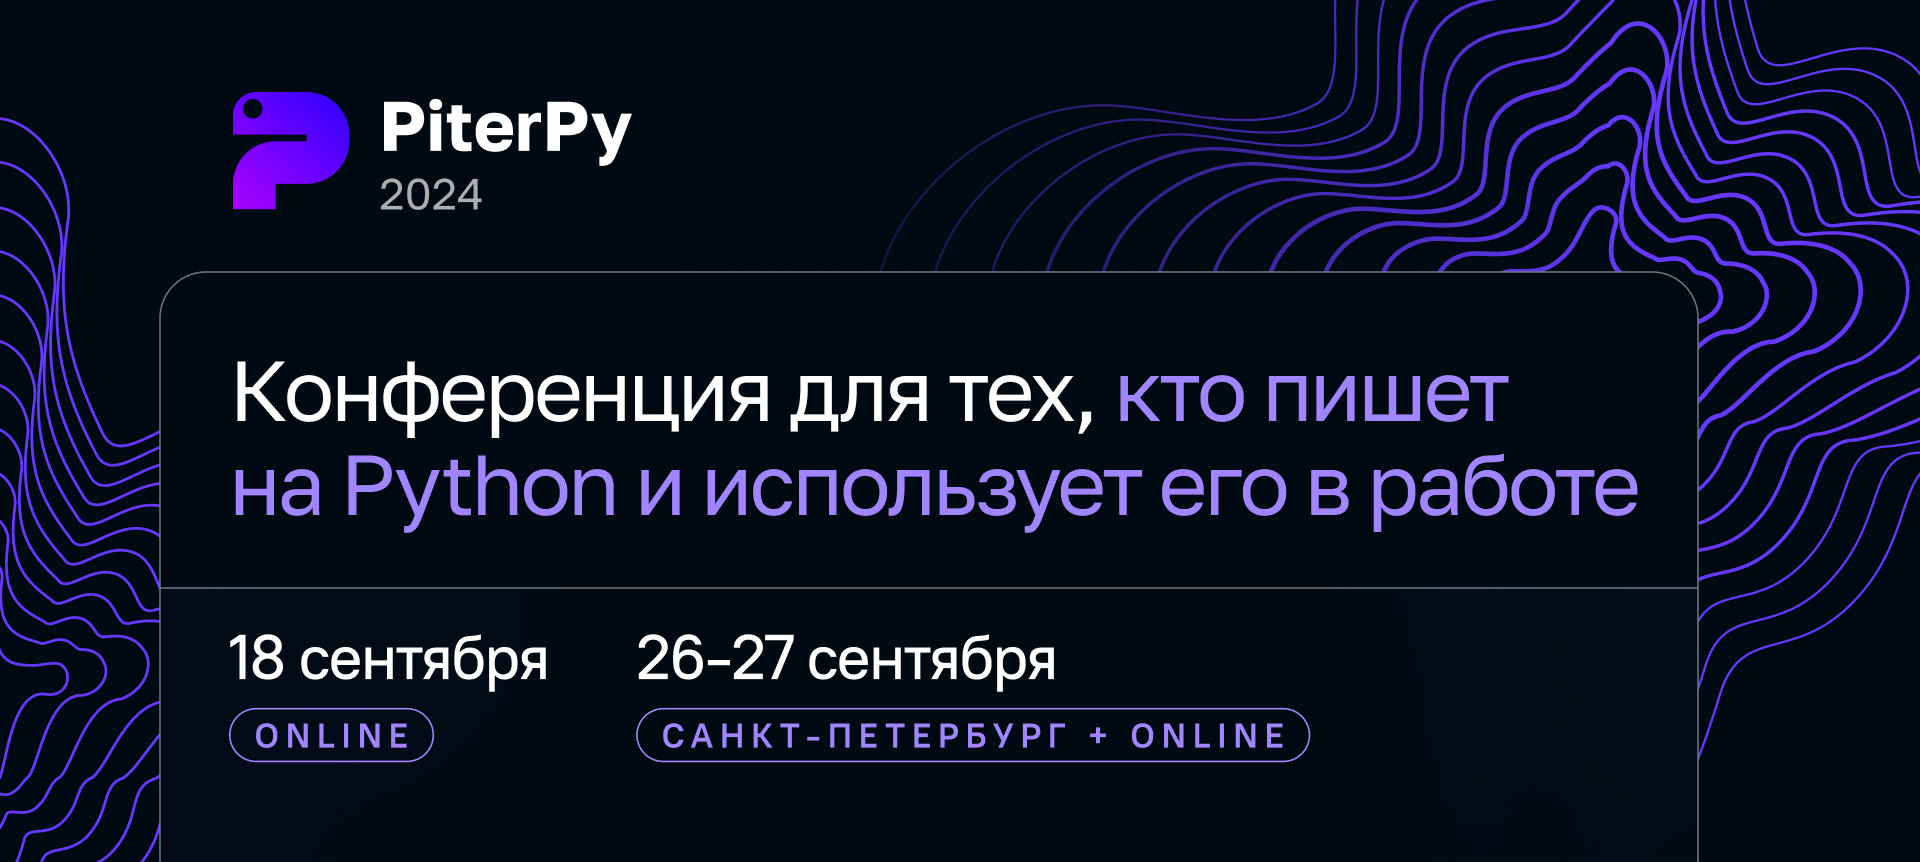 Обложка мероприятия PiterPy 2024 Online